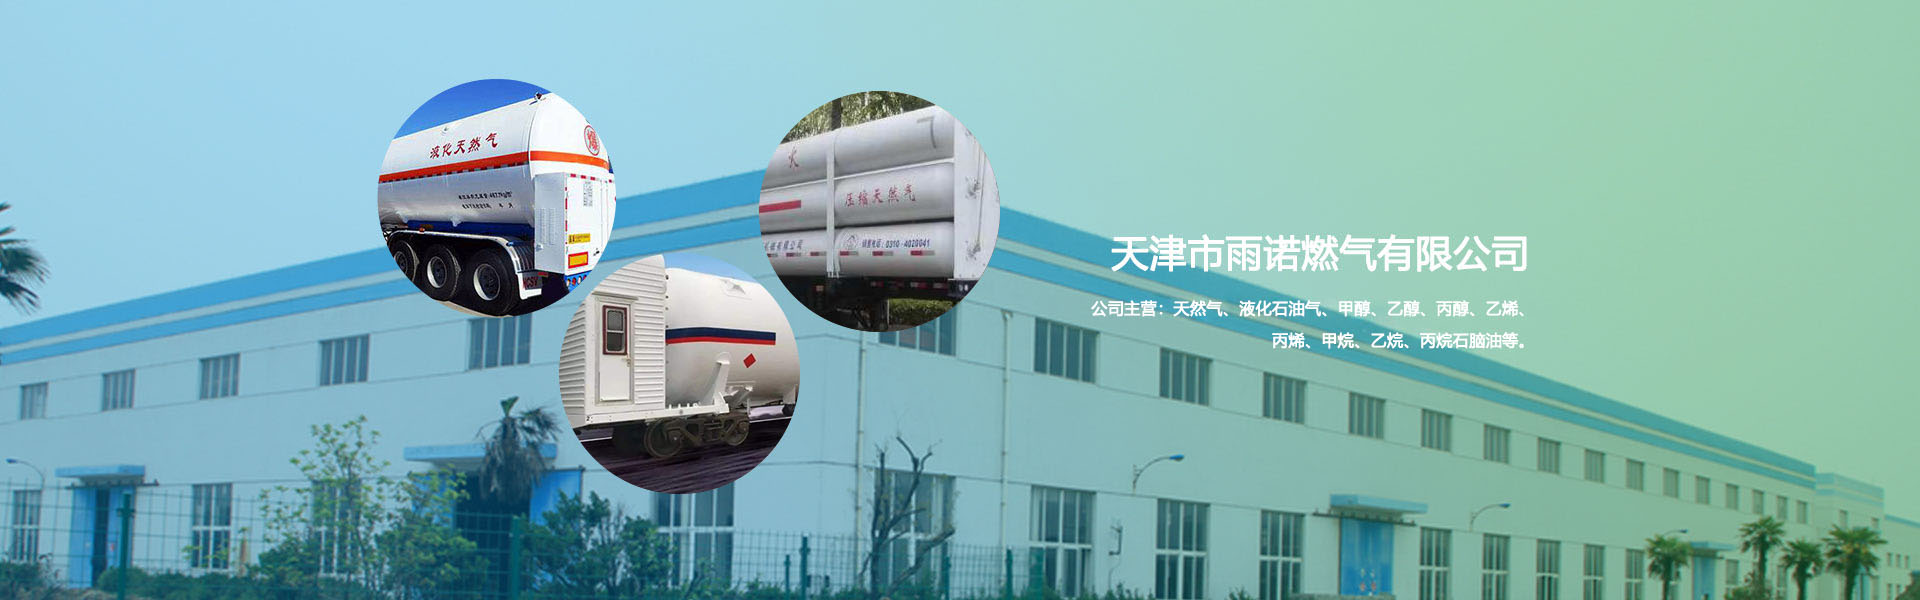 天津天然气配送的运输方法许多